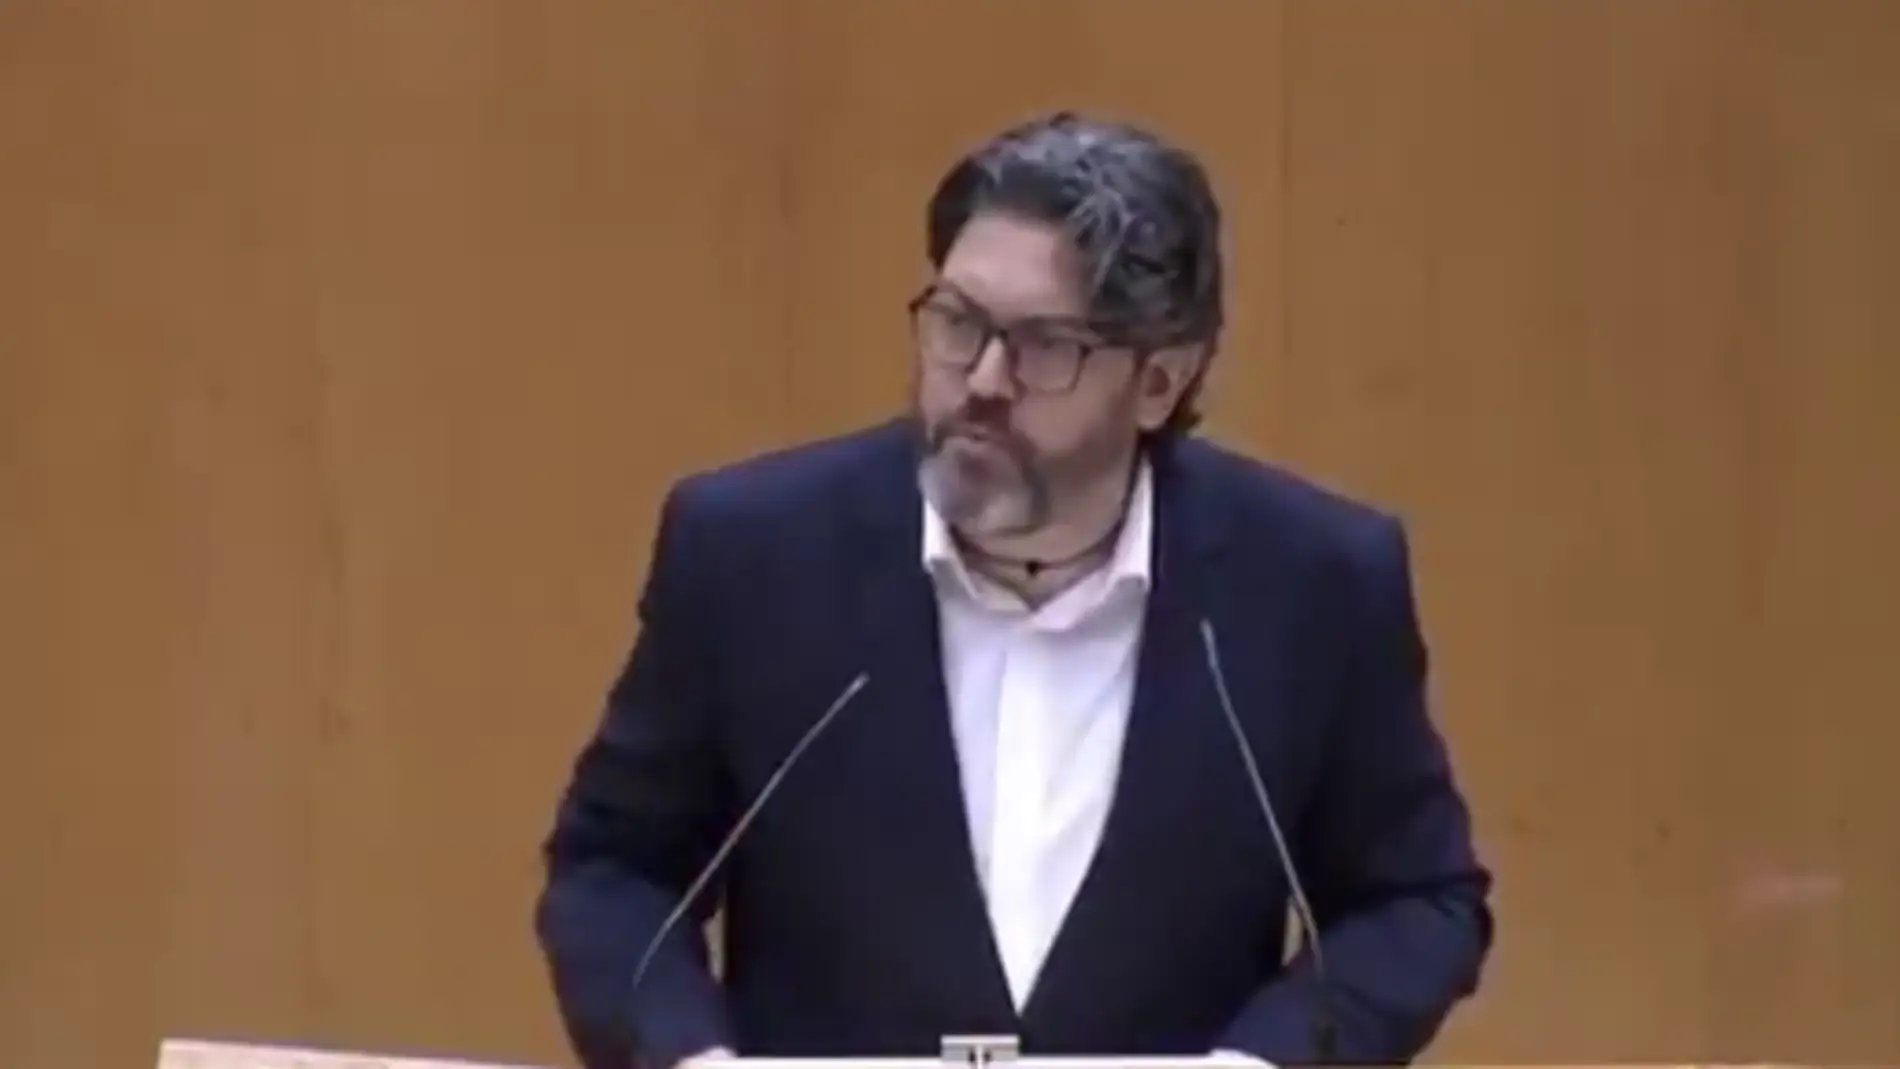 El senador de Cs, Miguel Sánchez, se indigna: "Nos tratan como a ciudadanos de tercera"